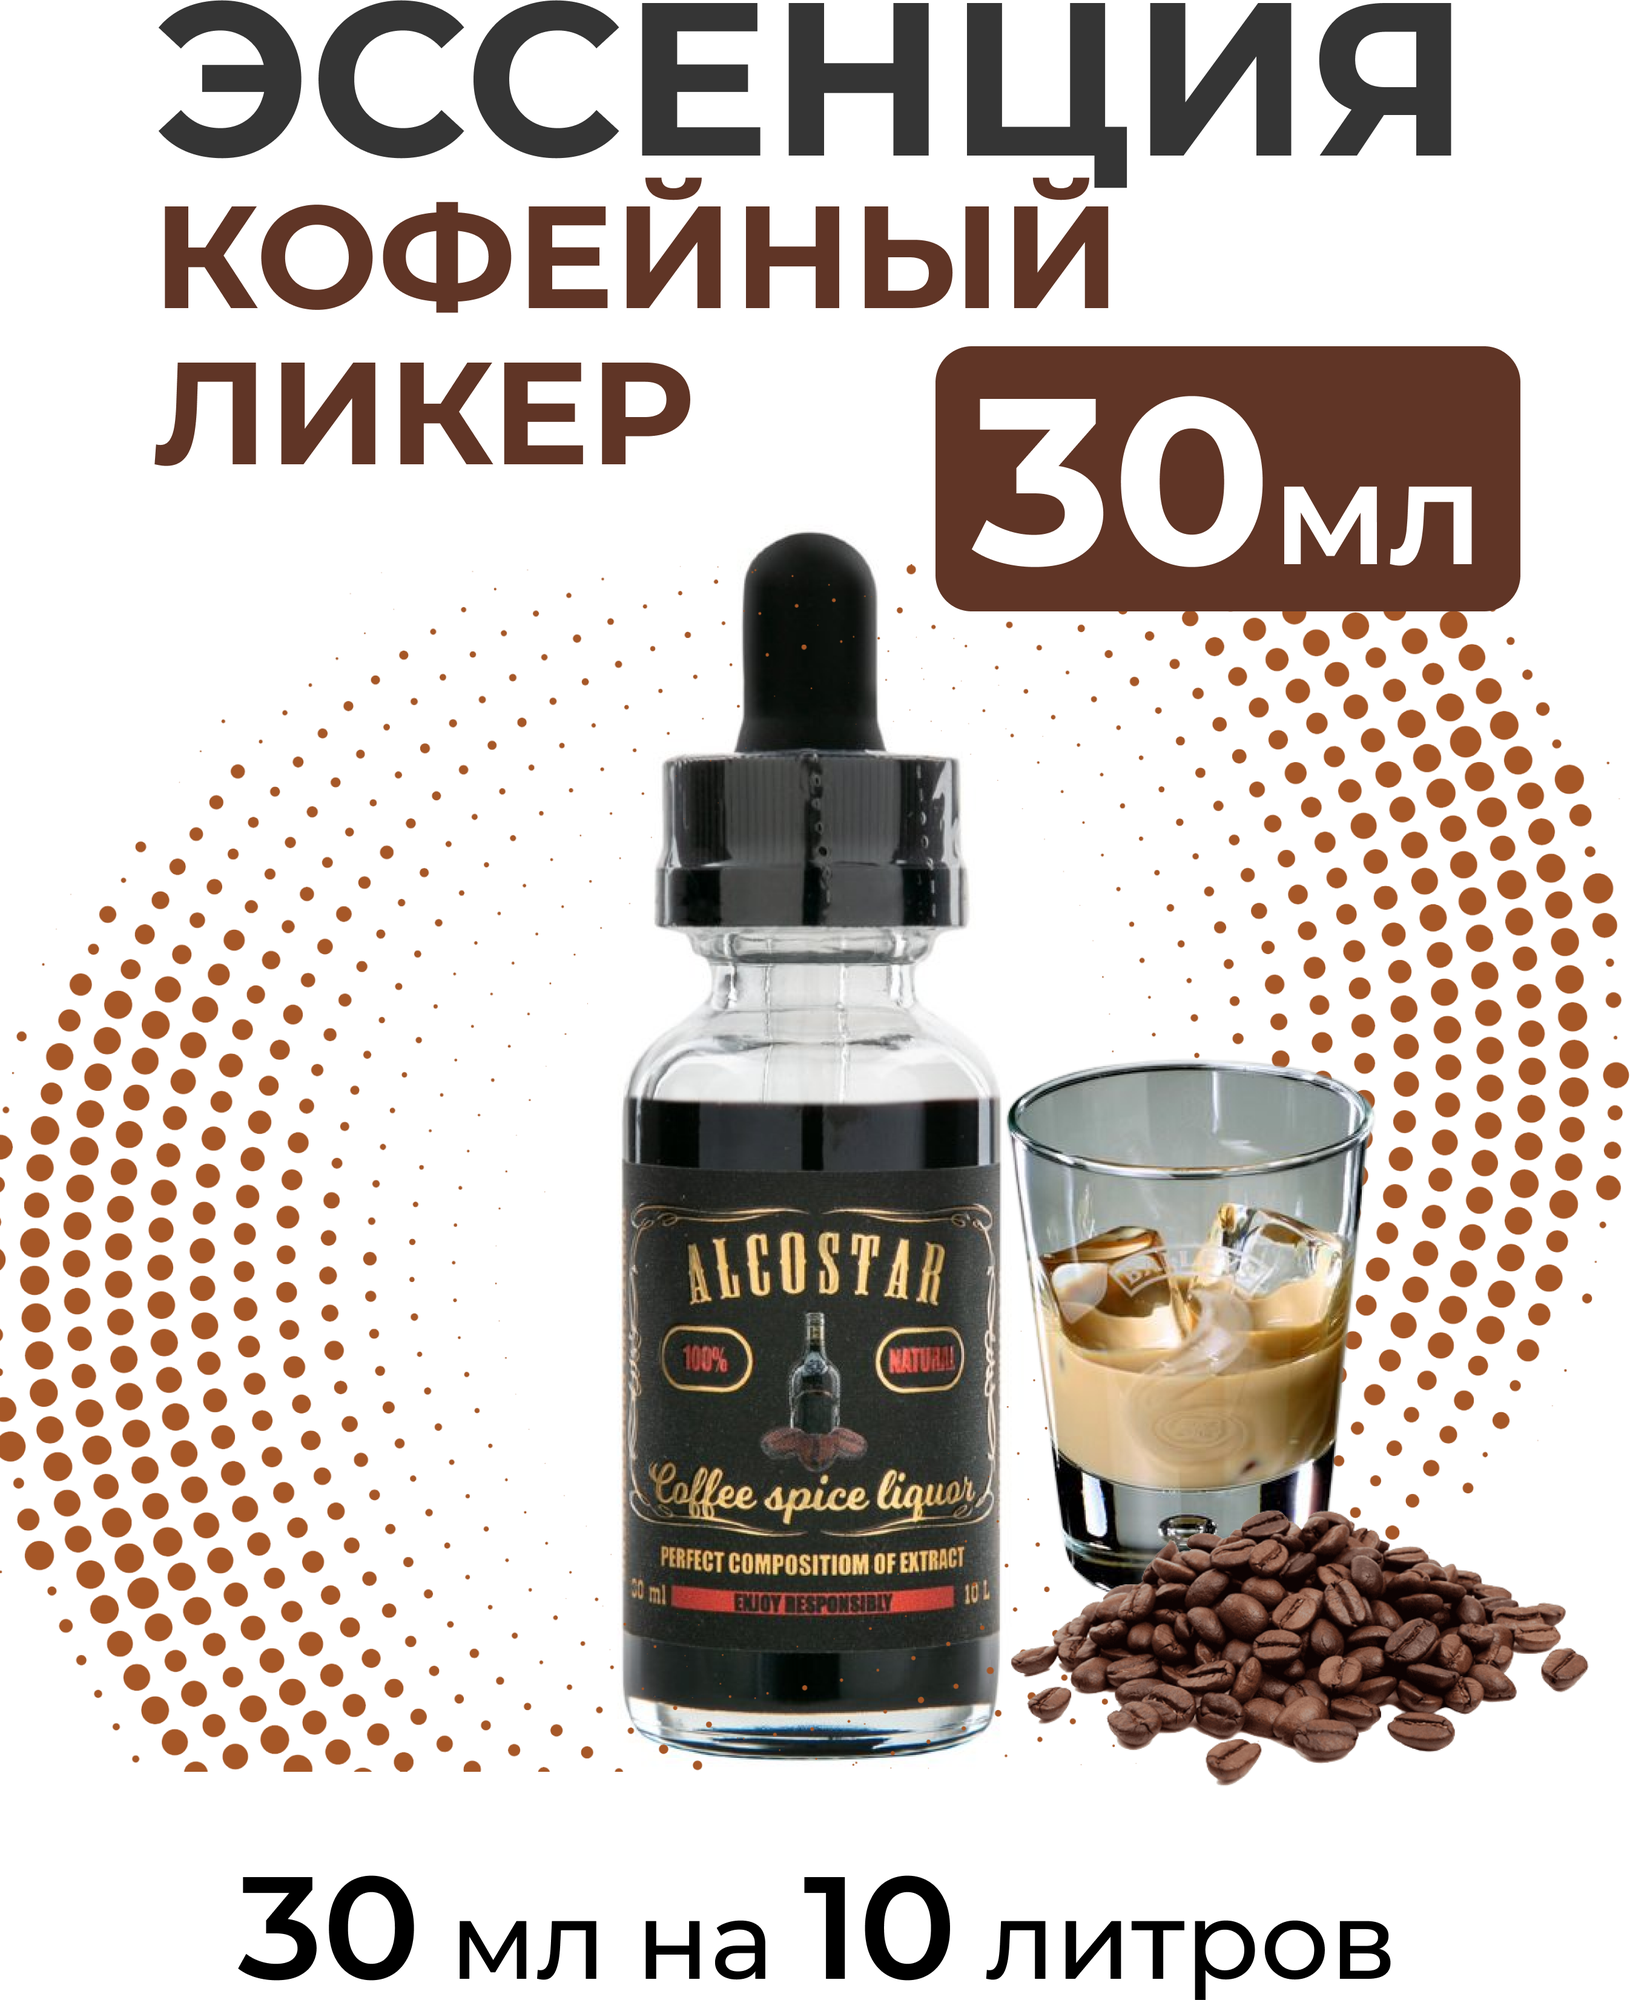 Эссенция Кофейный ликер, Coffee spice liquor Alcostar, вкусовой концентрат (ароматизатор пищевой) для самогона, 30 мл